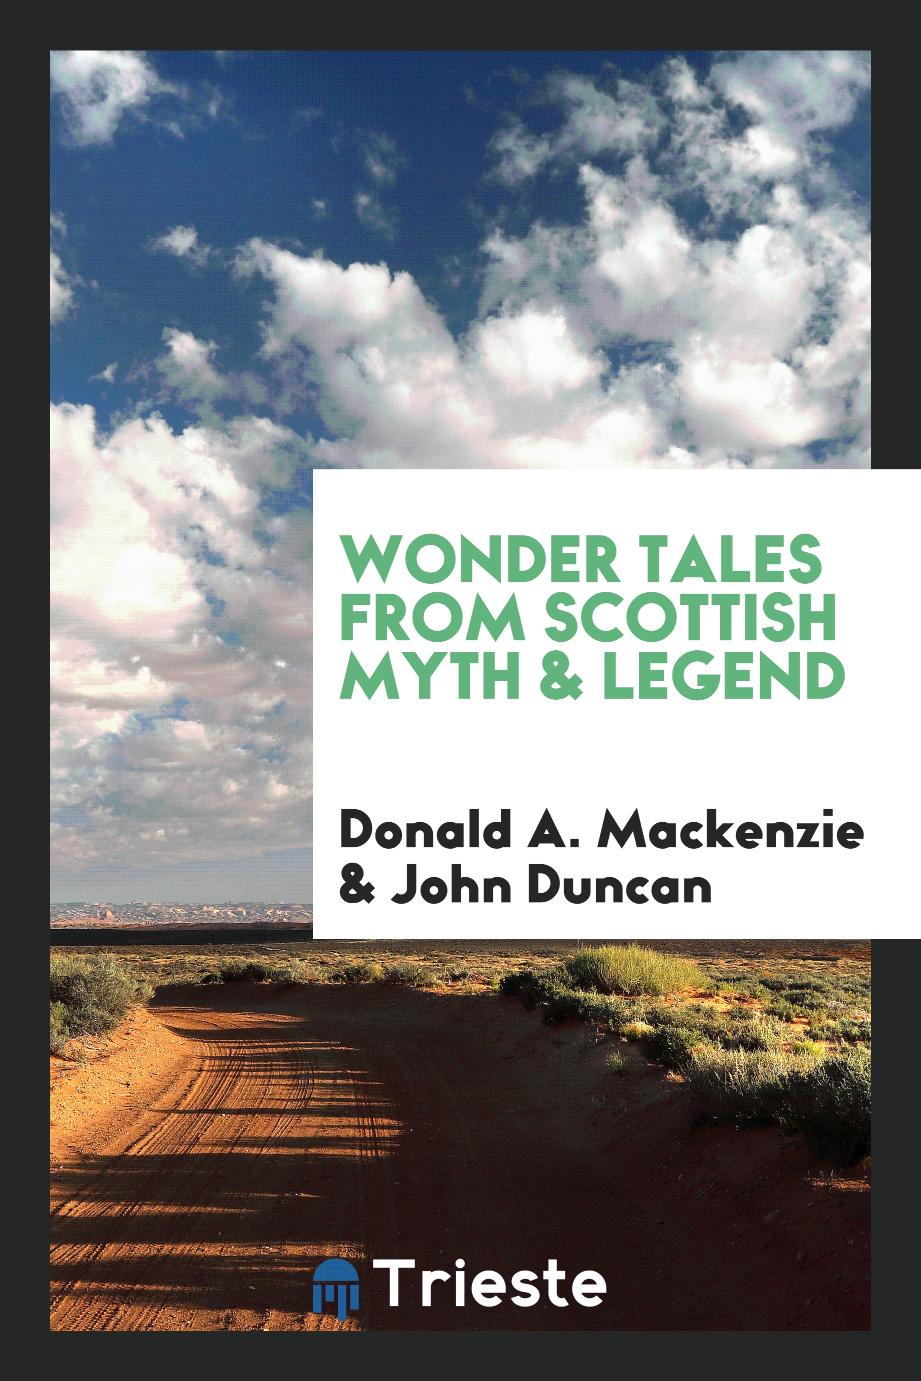 Wonder tales from Scottish myth & legend